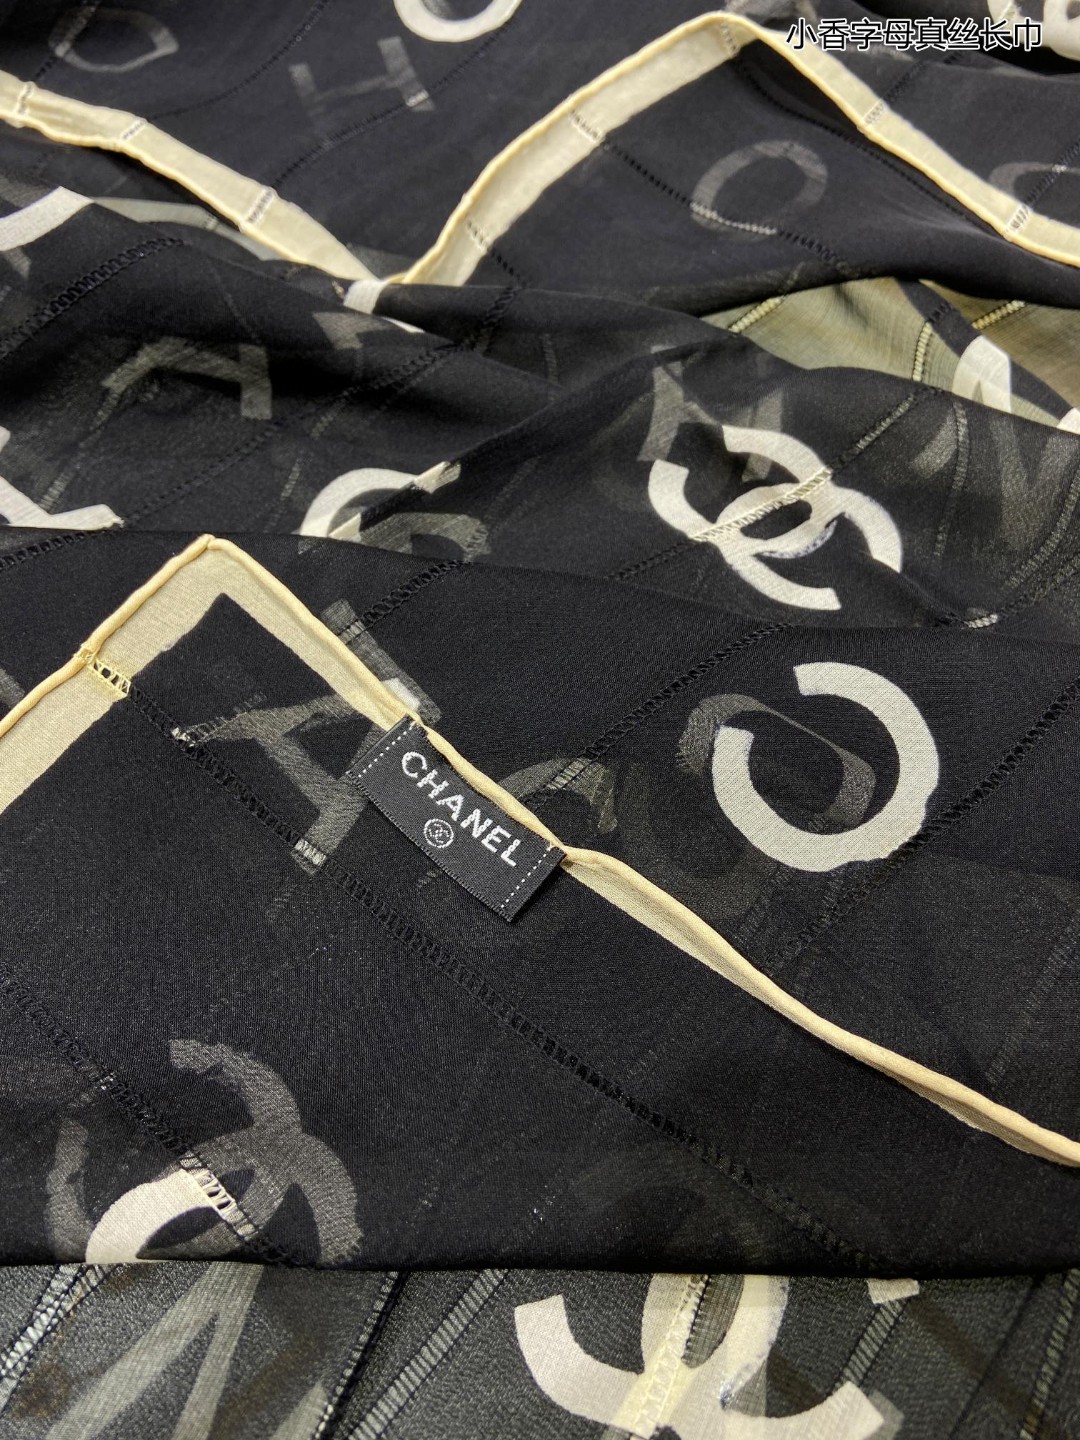 新最新款小香字母真丝长巾真丝雪纺采用LOGO字母元素图案印花工艺呈现于轻盈雪纺面料之上围巾完美奂就醇真的